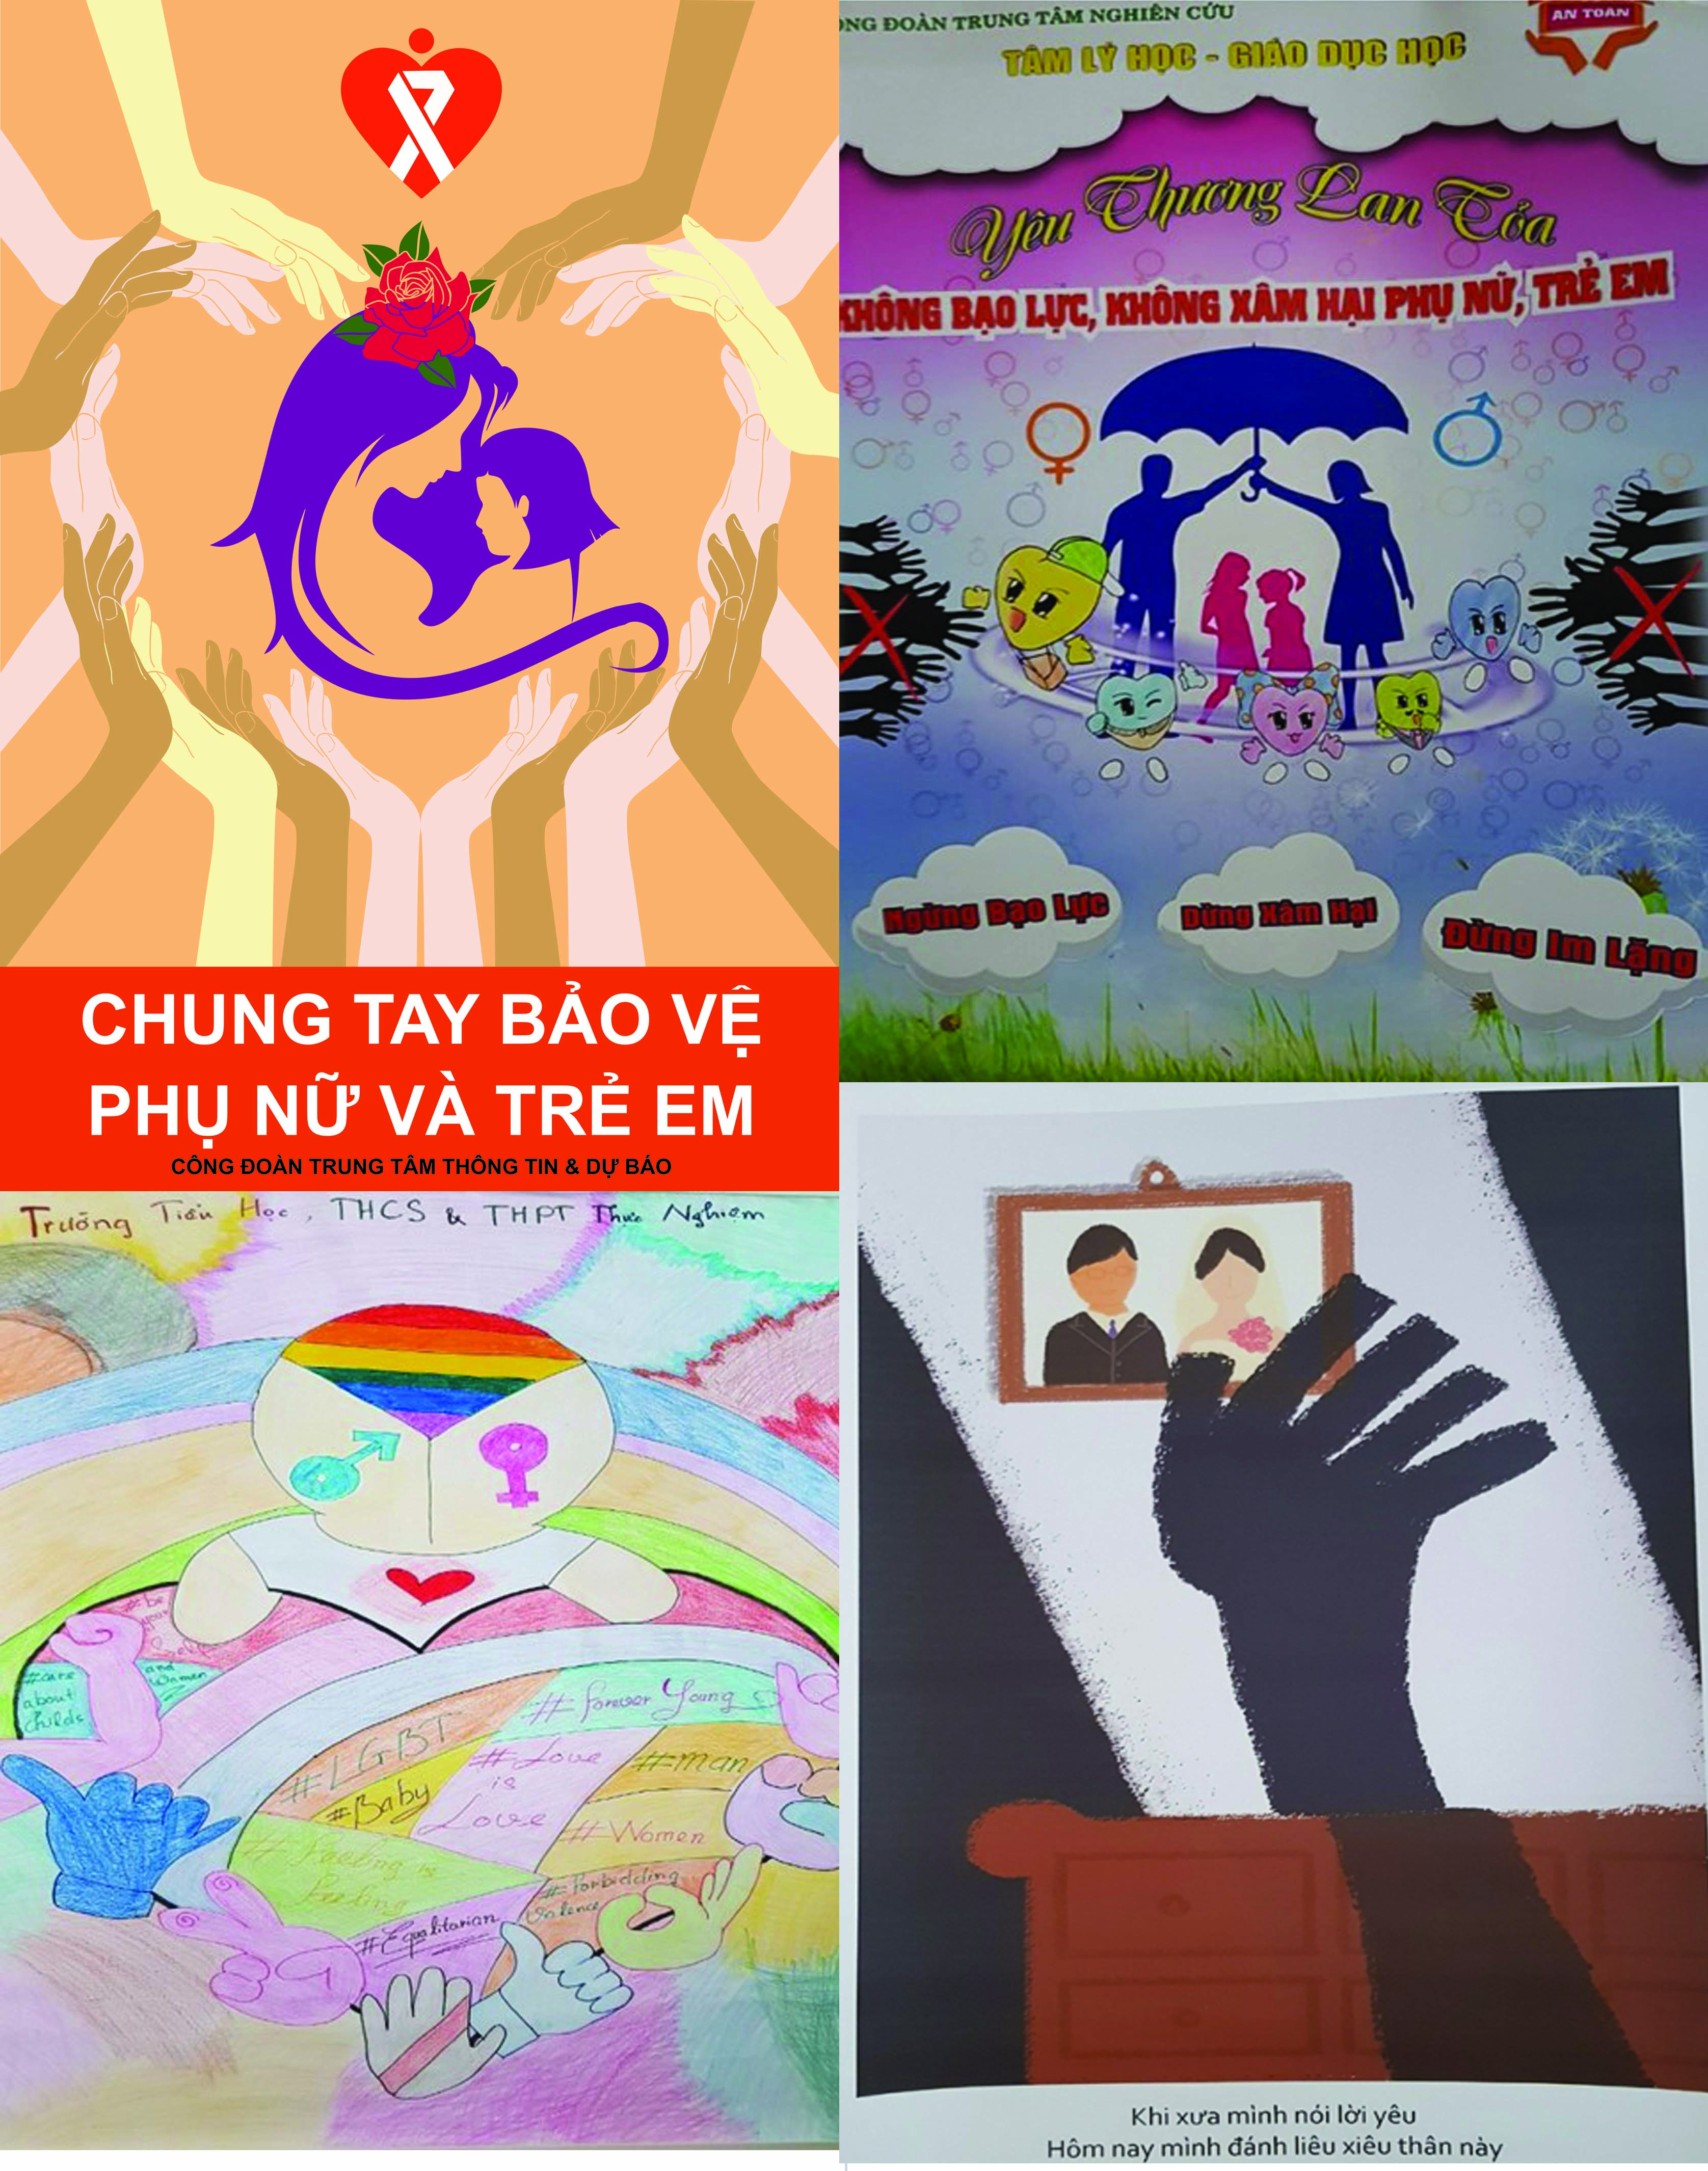 Tuyên truyền về bình đẳng giới của Công đoàn Viện Khoa học Giáo dục Việt Nam